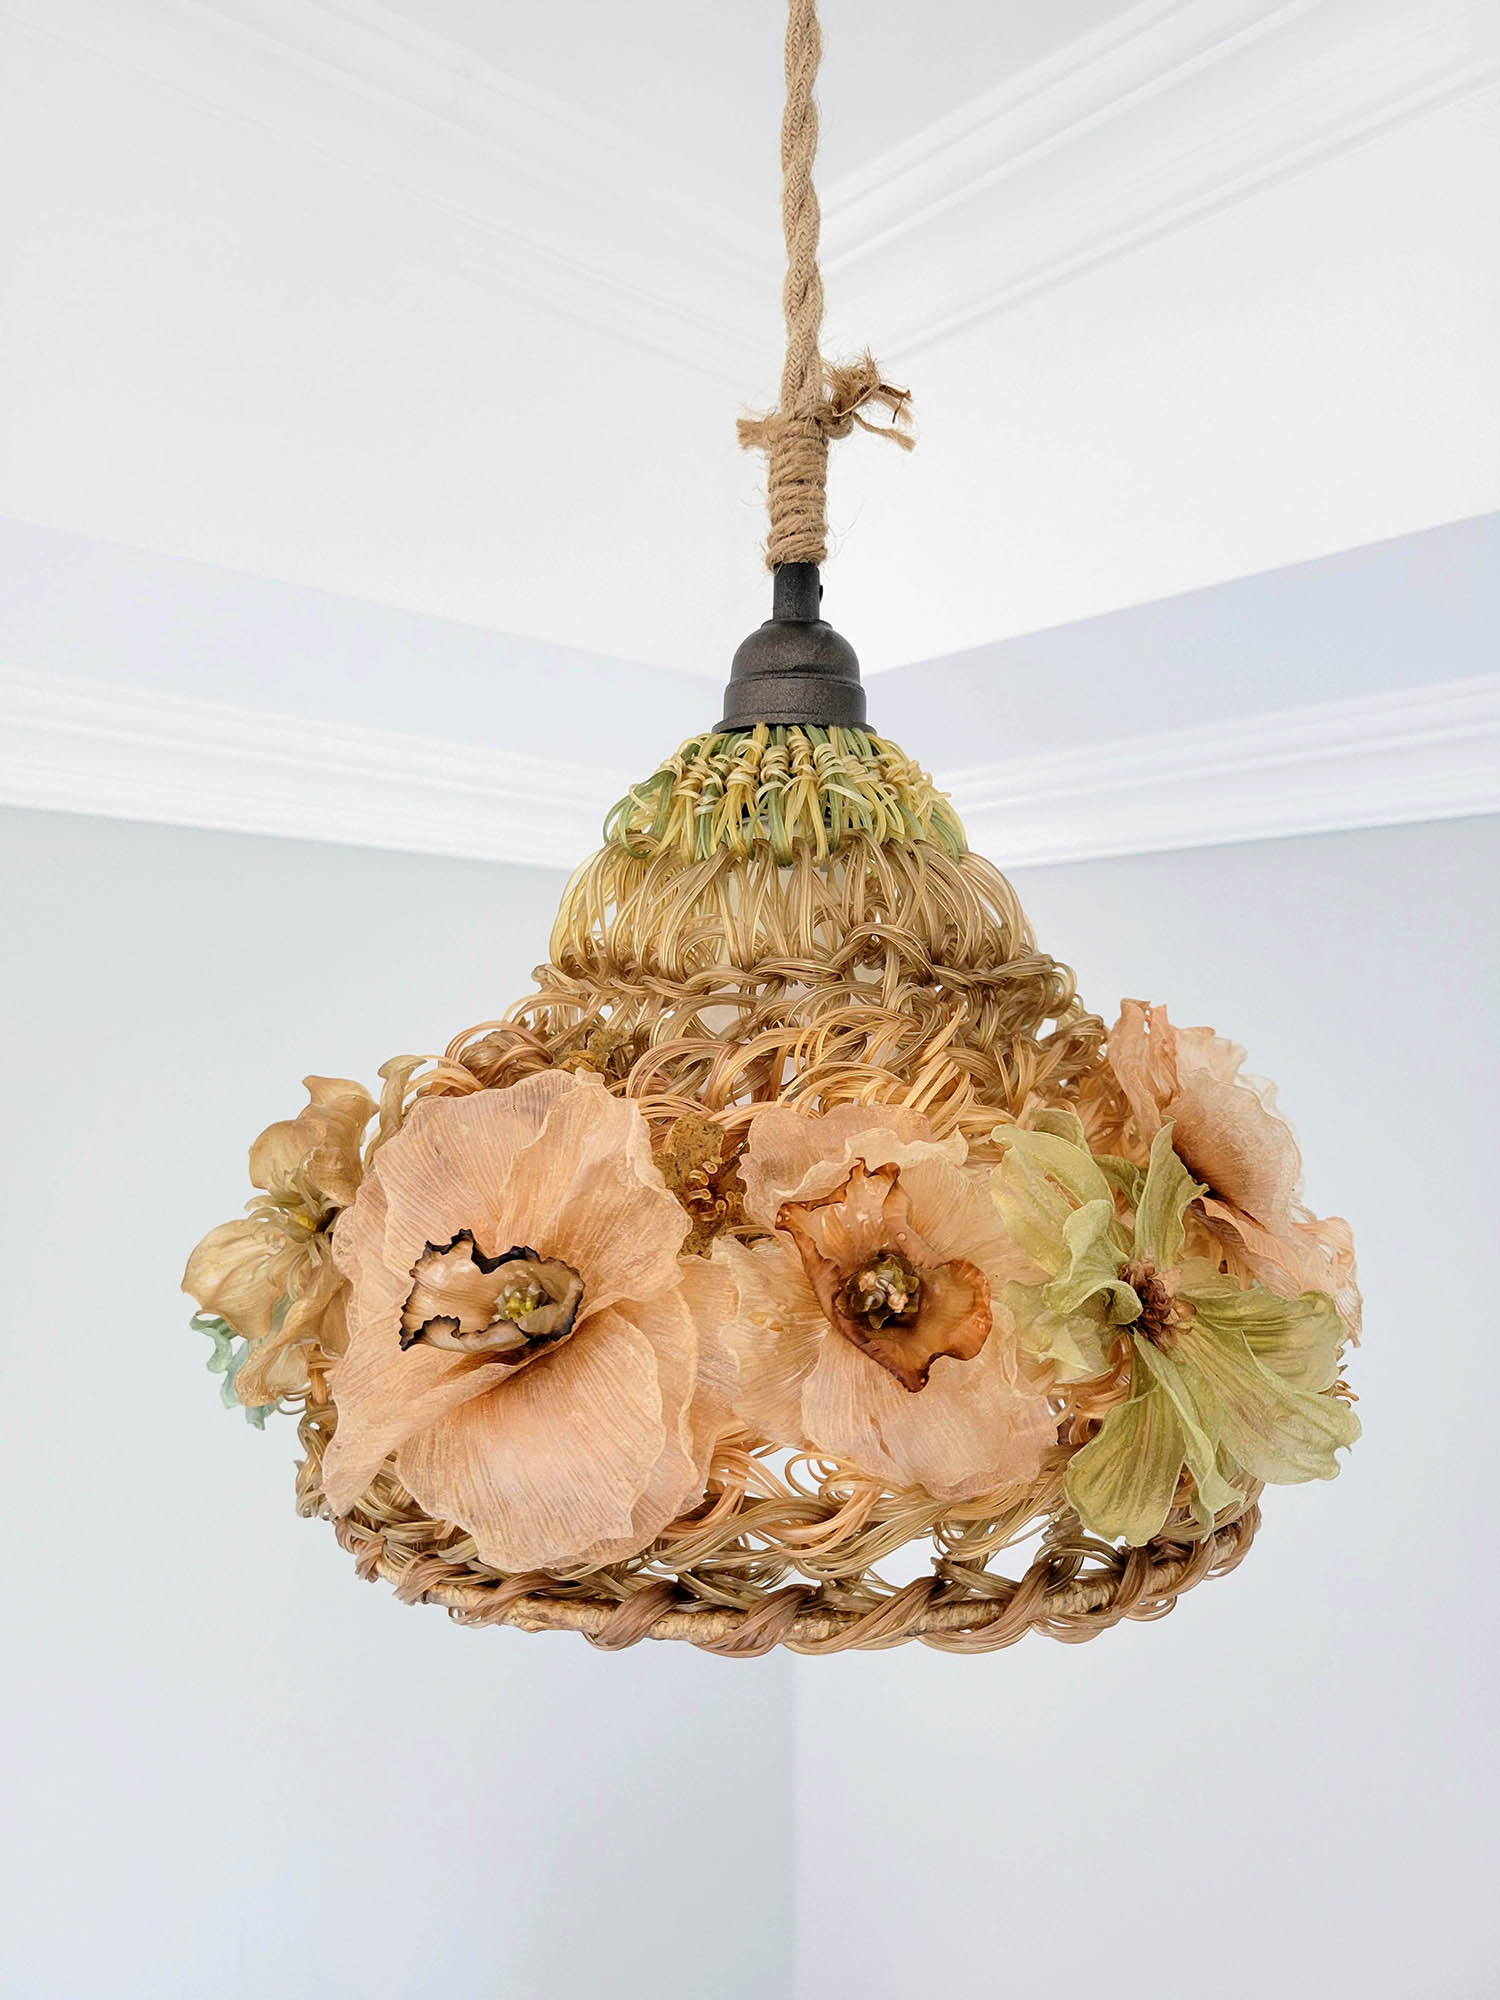 Tender Flora Pendant Lamp by Yi Hsuan Sung at Flora Gild